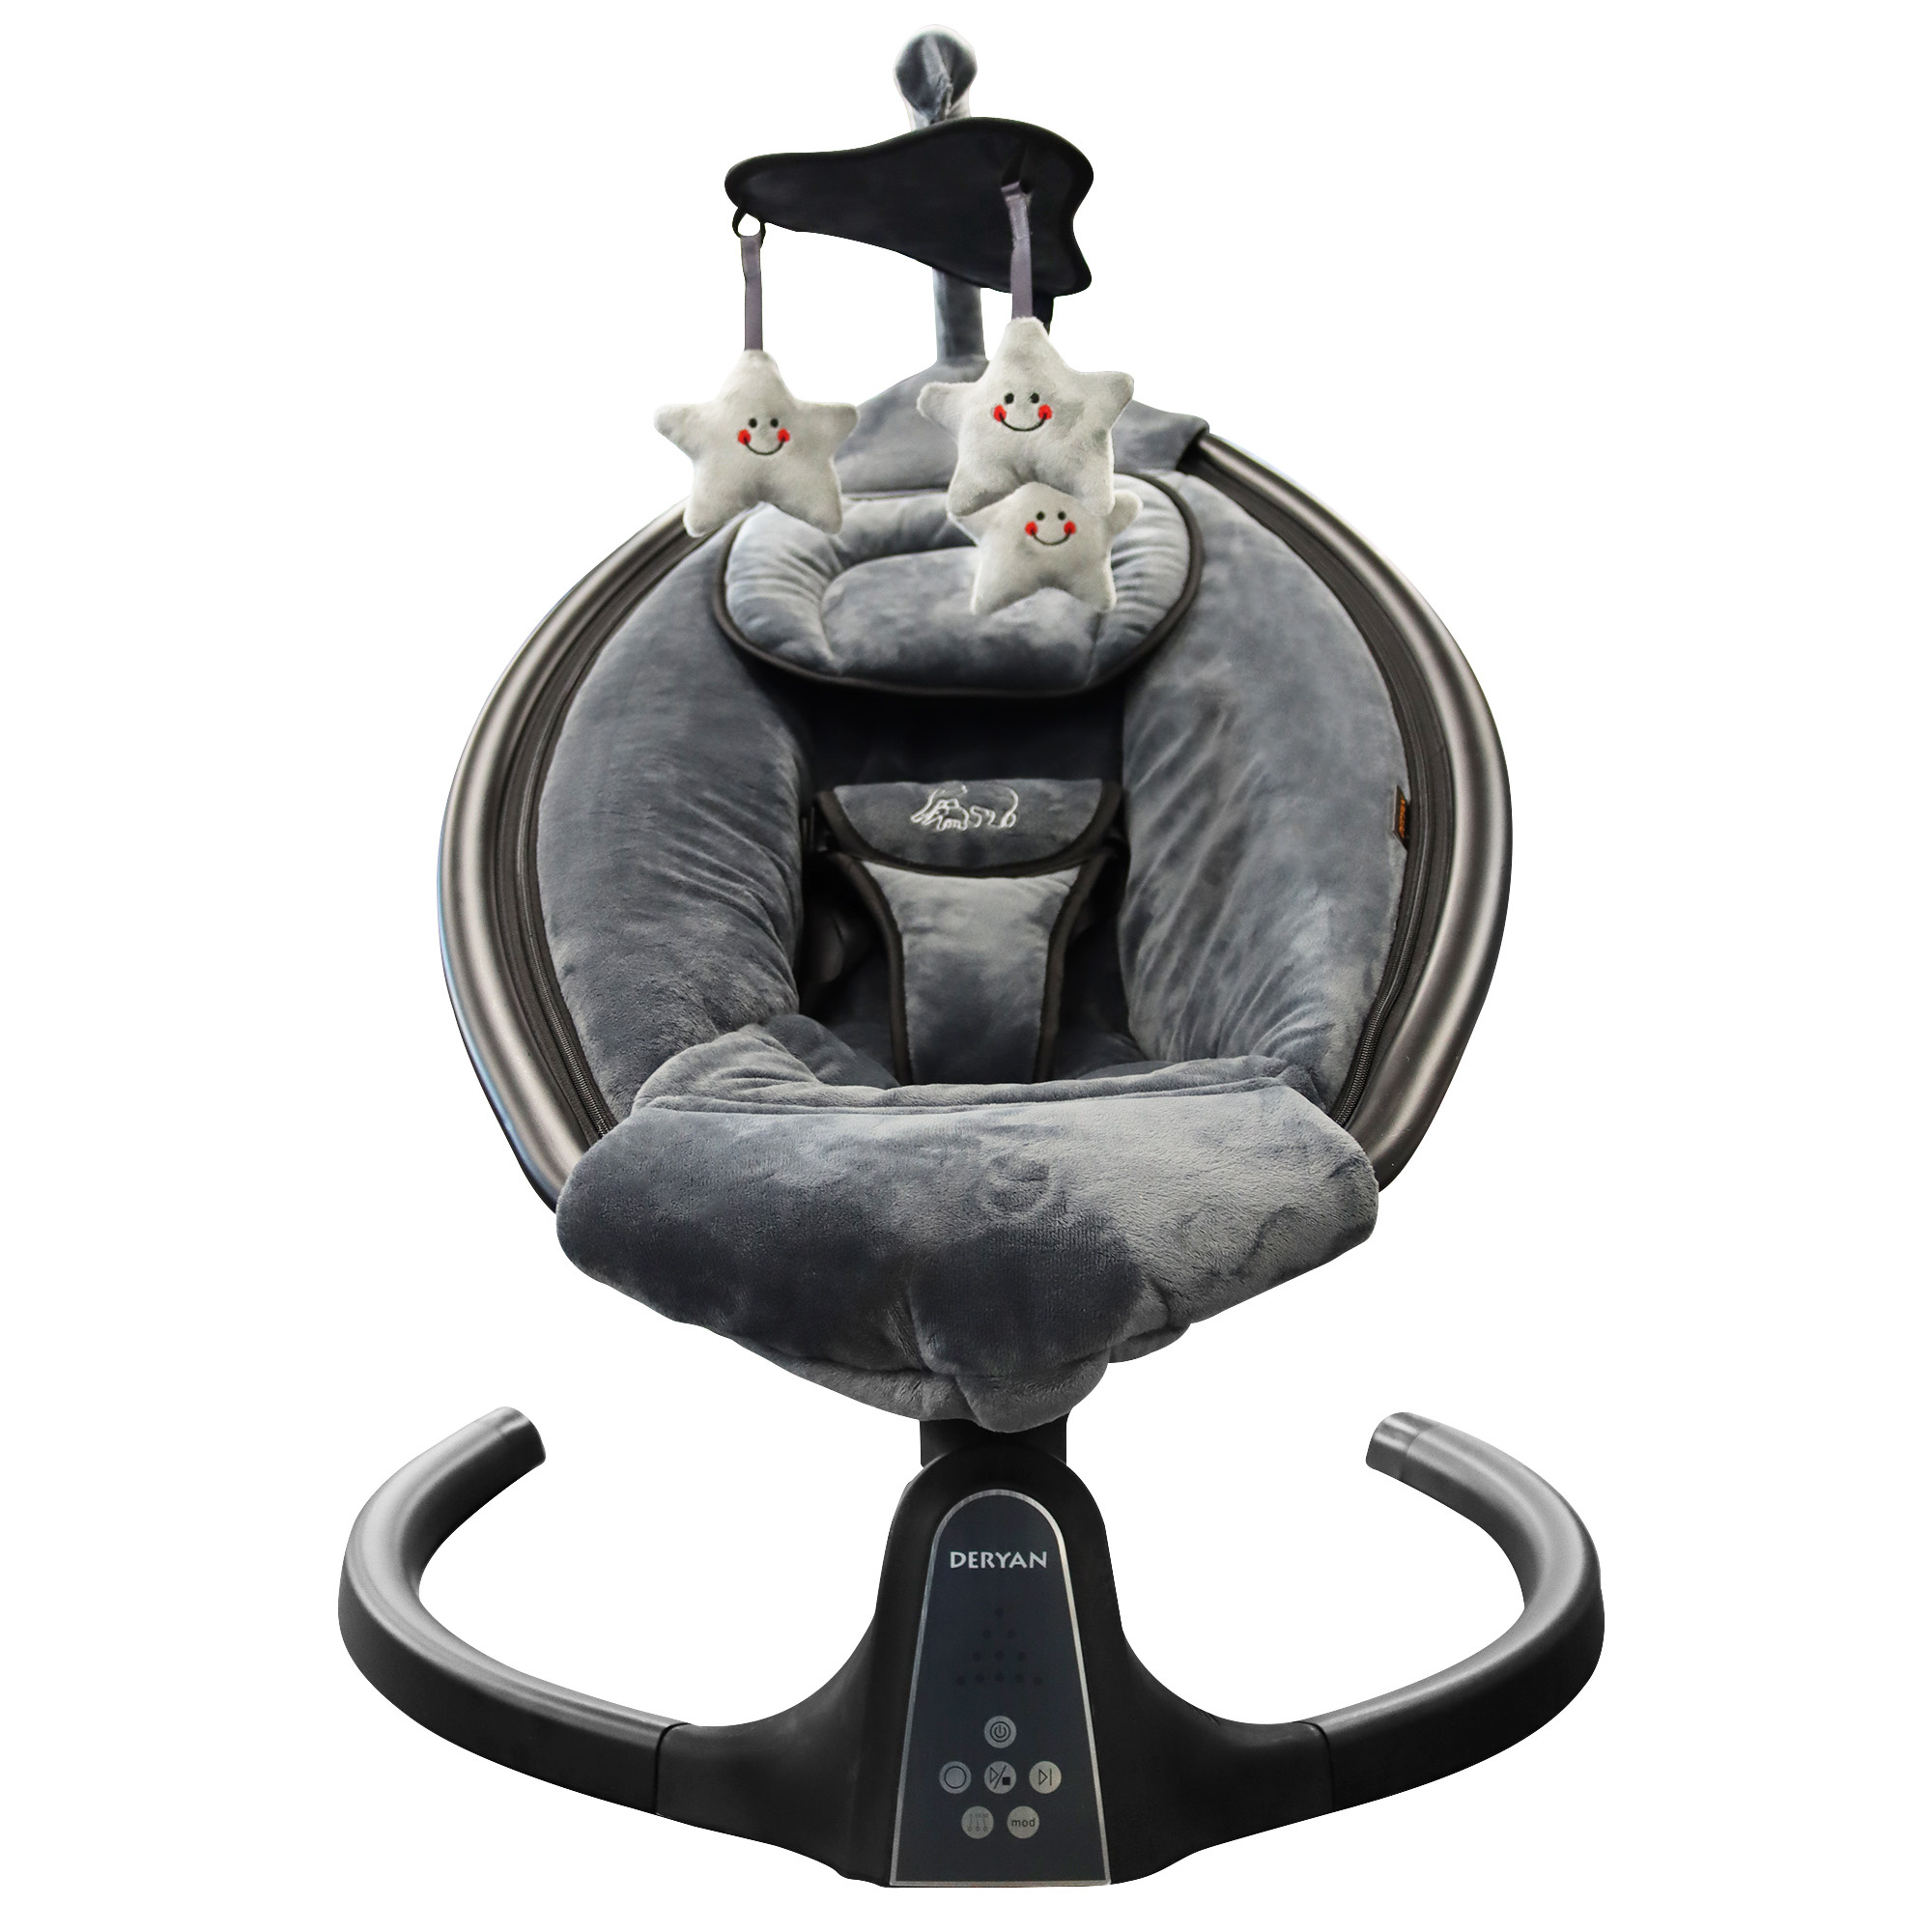 Alabama natuurpark Station Deryan Baby Wipstoel - Schommelstoel - Elektrische schommel stoel baby -  Schommelstoel met Bluetoothfunctie en Afstandsbediening - BABY-PHANT